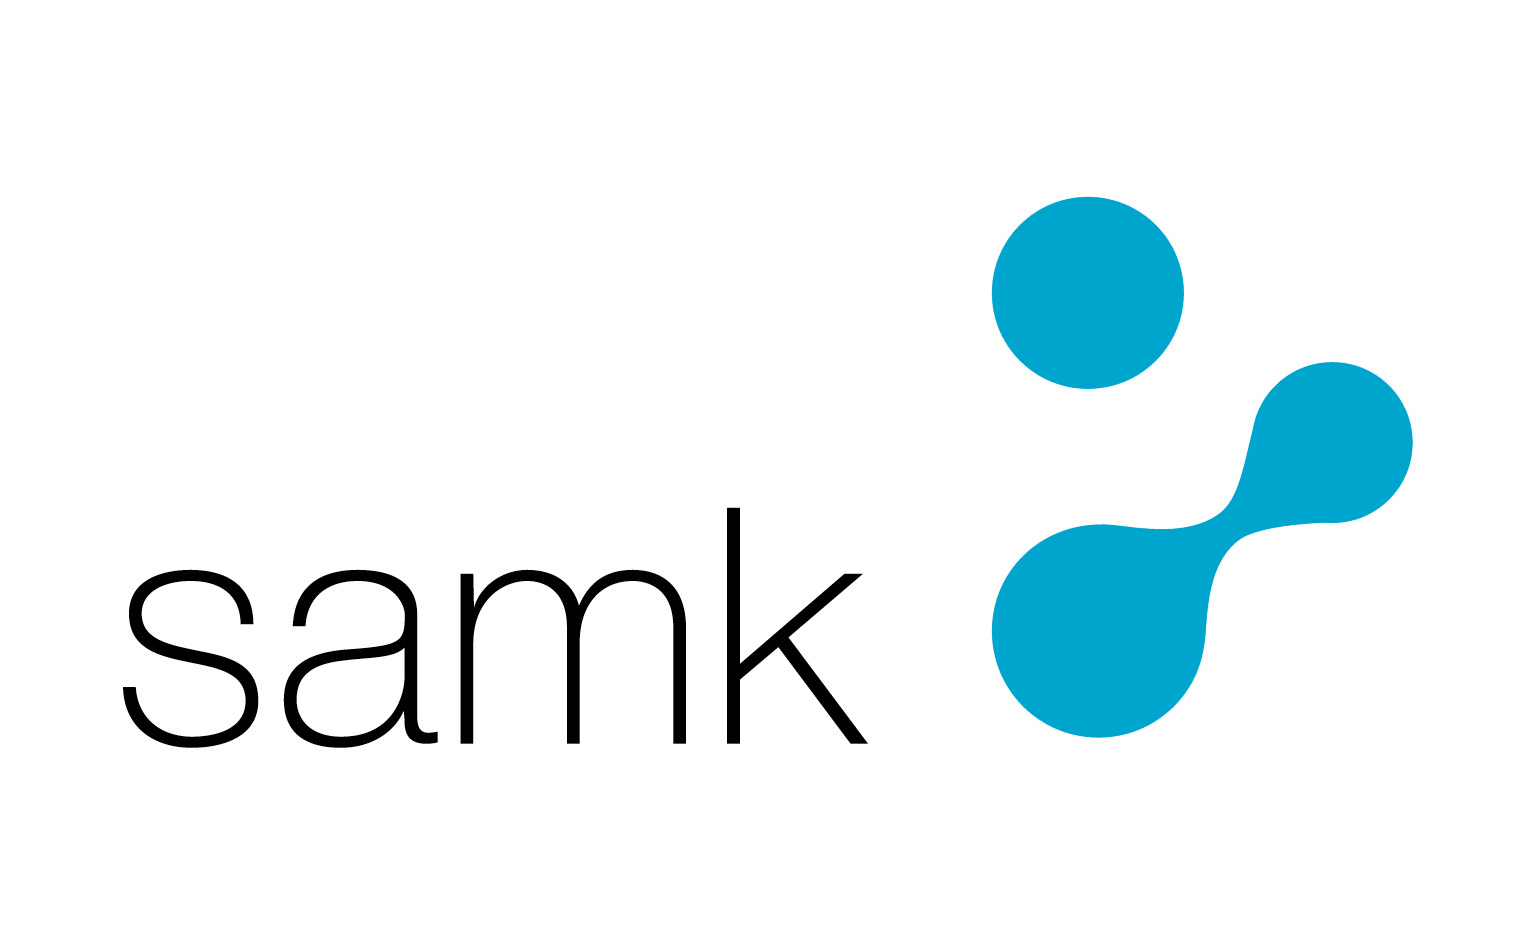 SAMK-logo